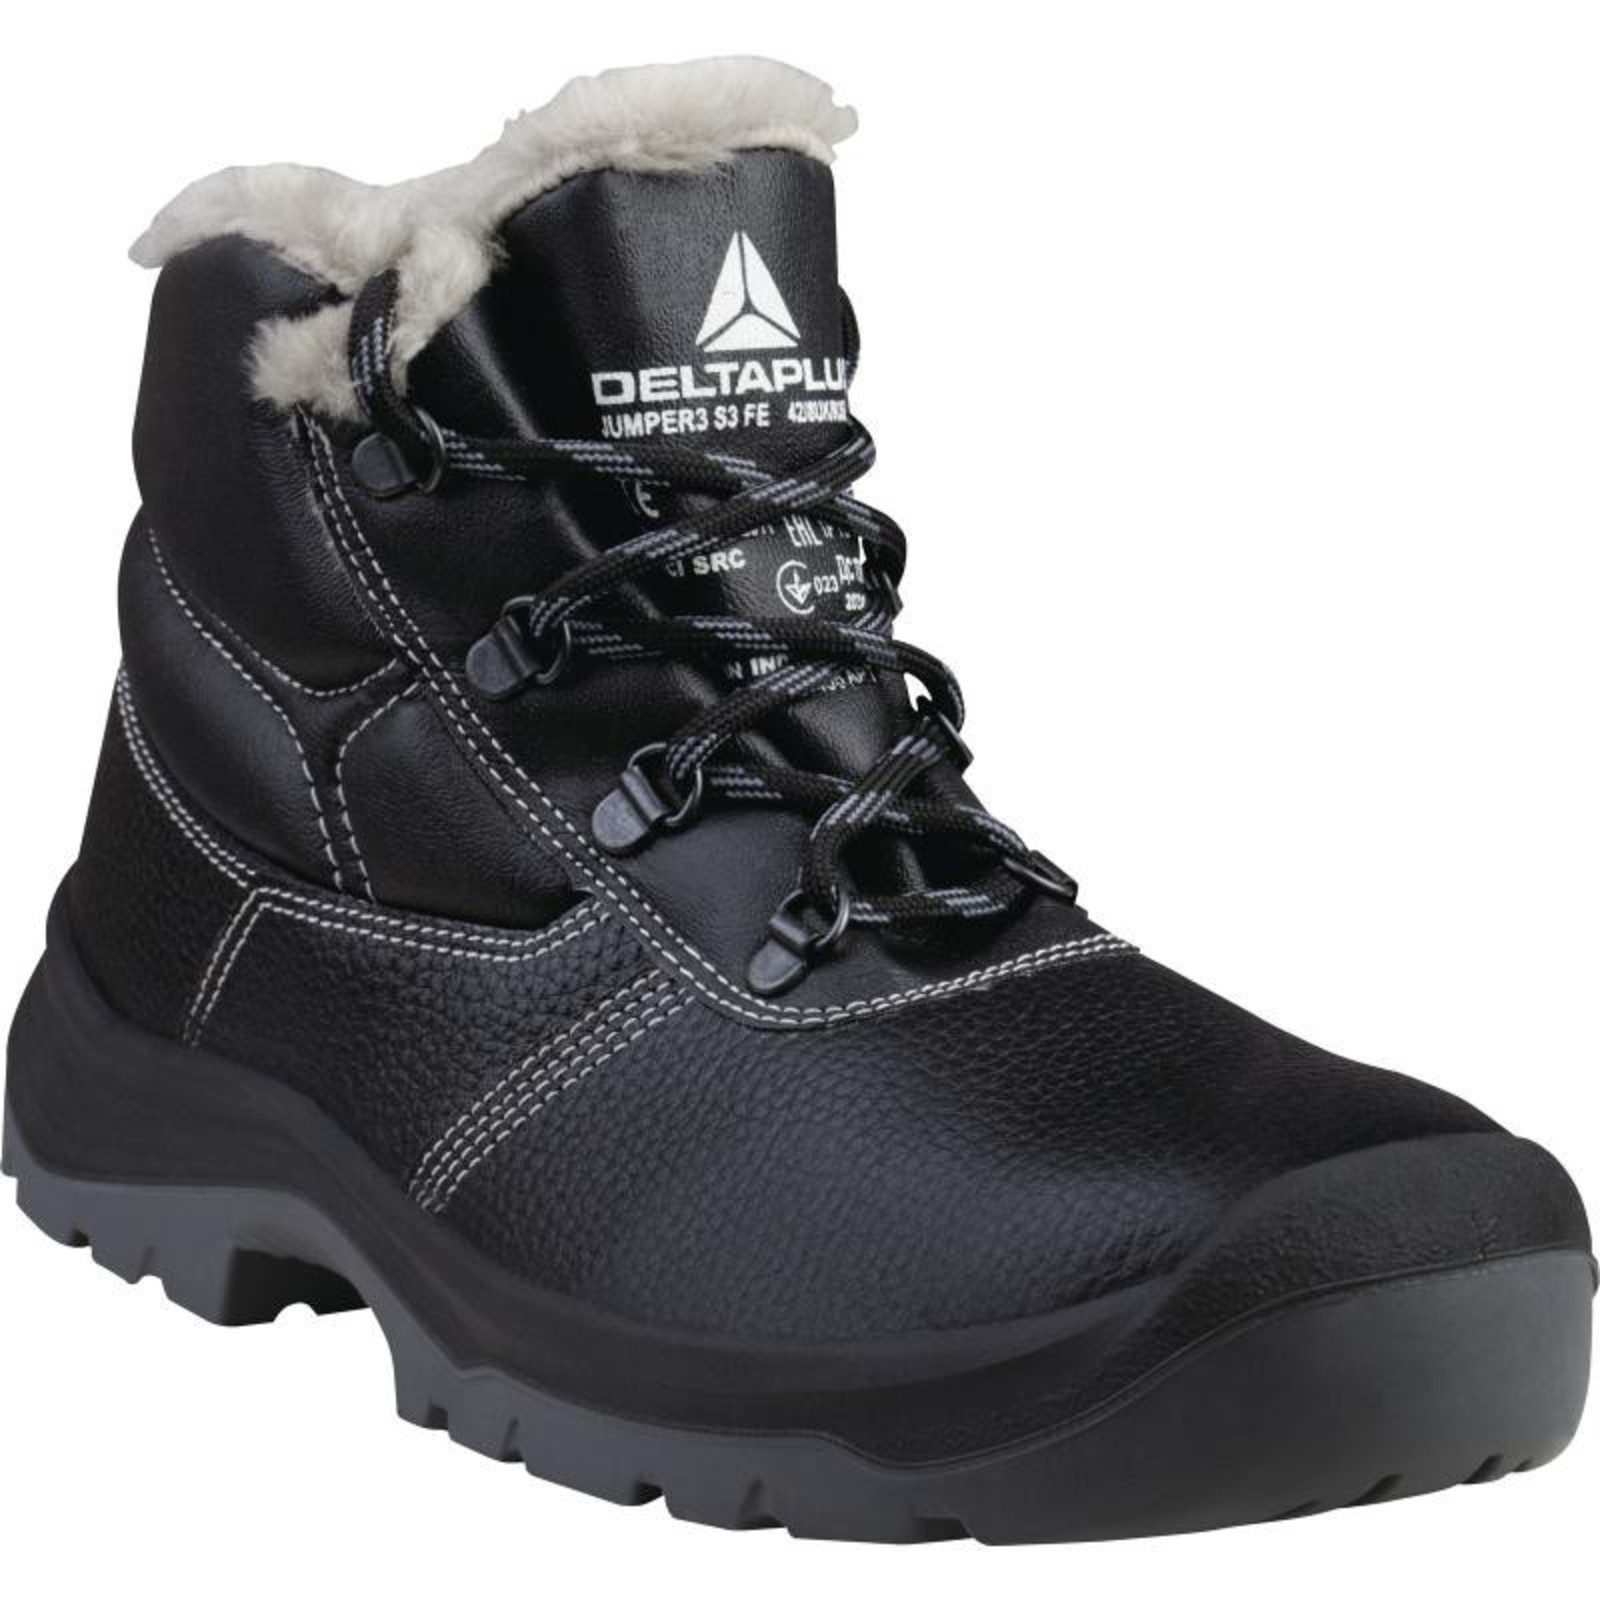 Zimná členková bezpečnostná obuv Delta Plus Jumper3 S3 - veľkosť: 43, farba: čierna